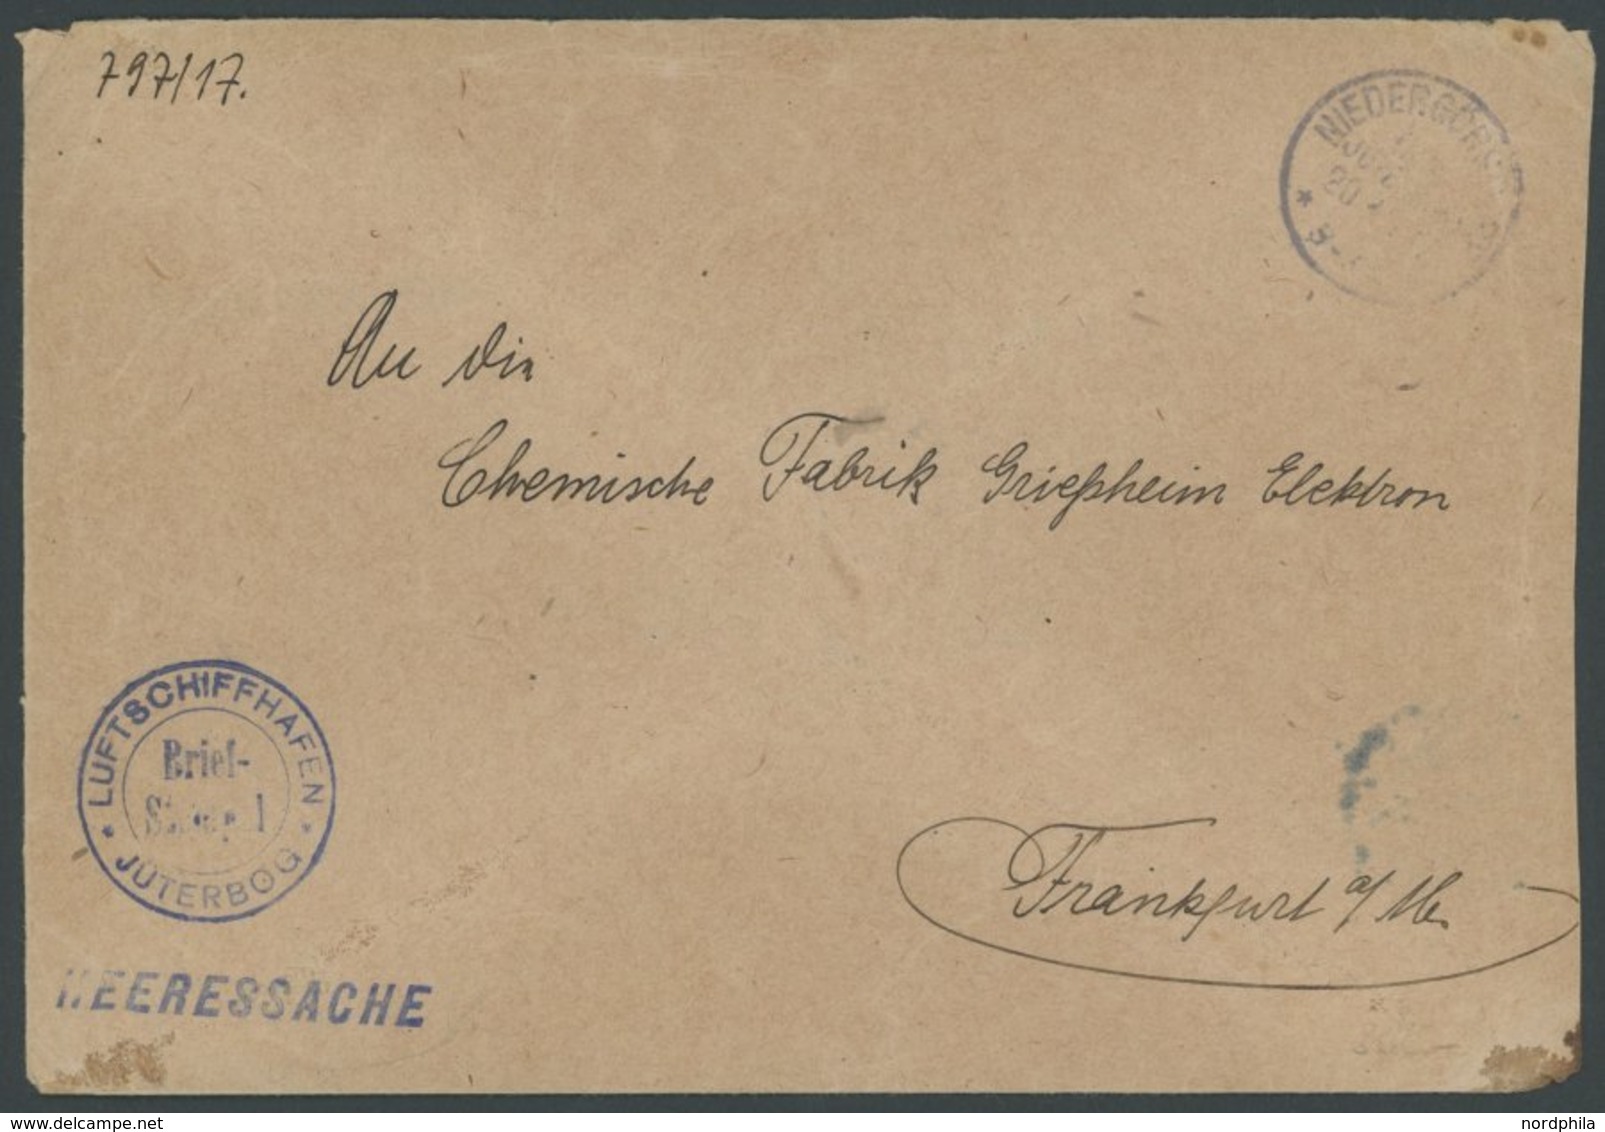 LUFTFAHRT IM I. WELTKRIEG 1916, LUFTSCHIFFHAFEN JÜTERBOG, Blauer Briefstempel Auf Heeressache, Feinst - Flugzeuge